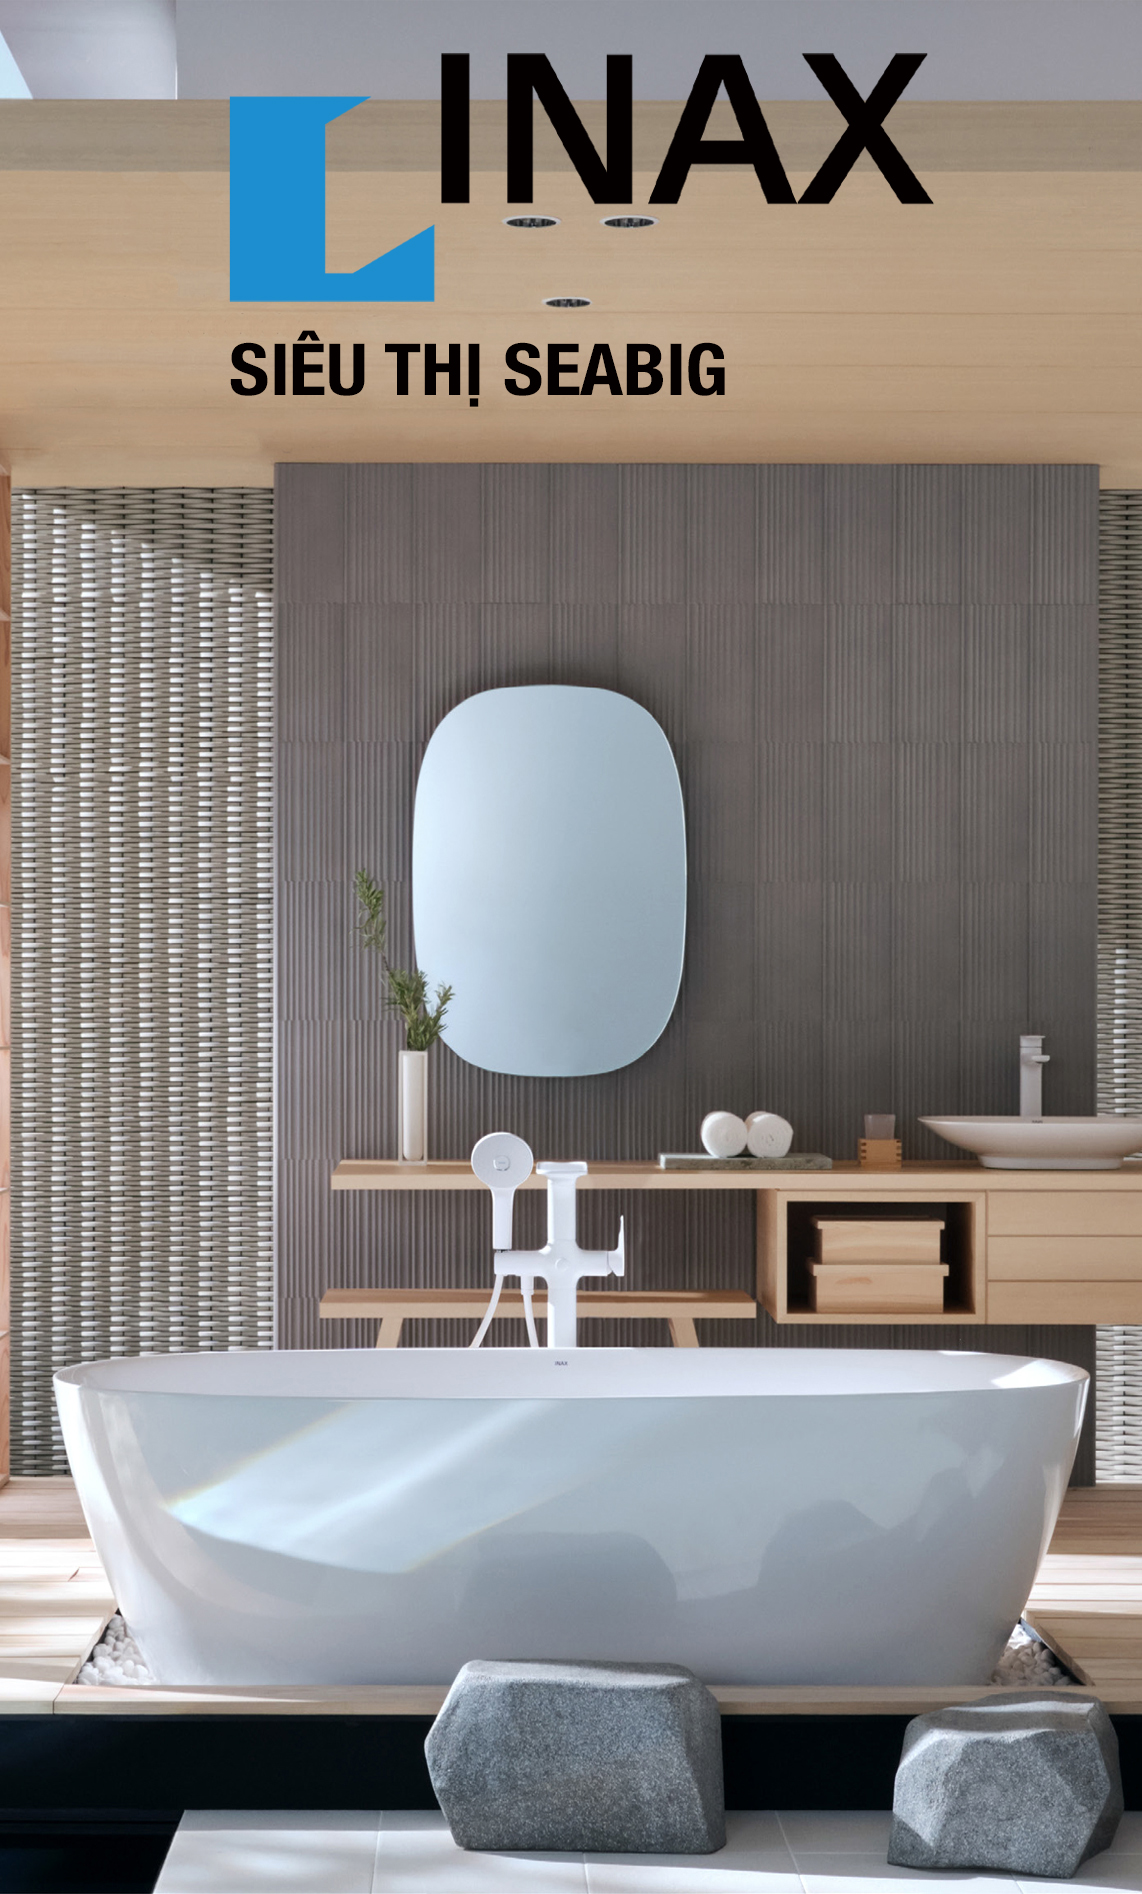 Thiết bị vệ sinh INAX cho phòng tắm nhỏ: Bạn đang tìm kiếm giải pháp vệ sinh tiện ích và phù hợp với không gian nhỏ hẹp của phòng tắm của mình? Thiết bị vệ sinh INAX cho phòng tắm nhỏ sẽ giúp bạn giải quyết vấn đề này. Nó được thiết kế thông minh để phù hợp với không gian nhỏ và mang đến cho bạn cảm giác thoải mái khi dùng. Hãy xem hình ảnh liên quan để biết thêm chi tiết về sản phẩm này.